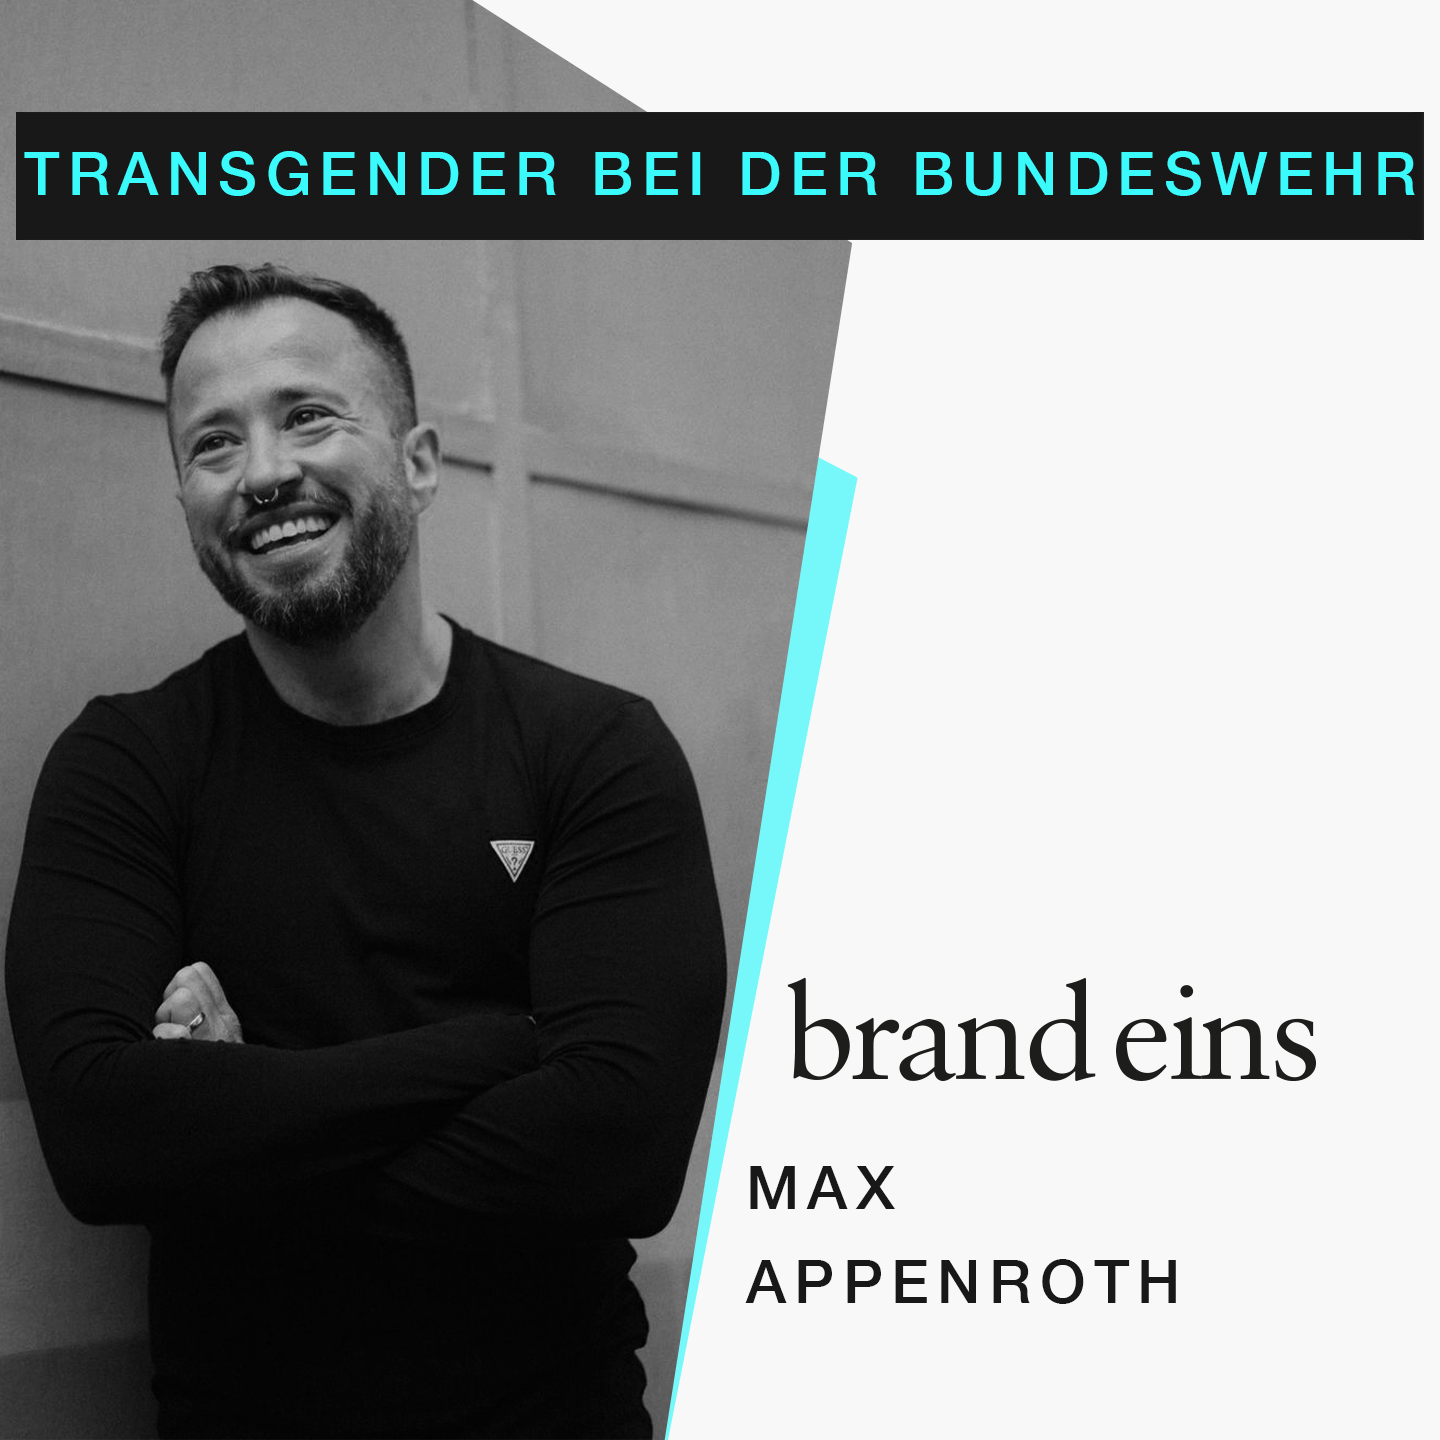 Max Appenroth: Vielfalt in Unternehmen